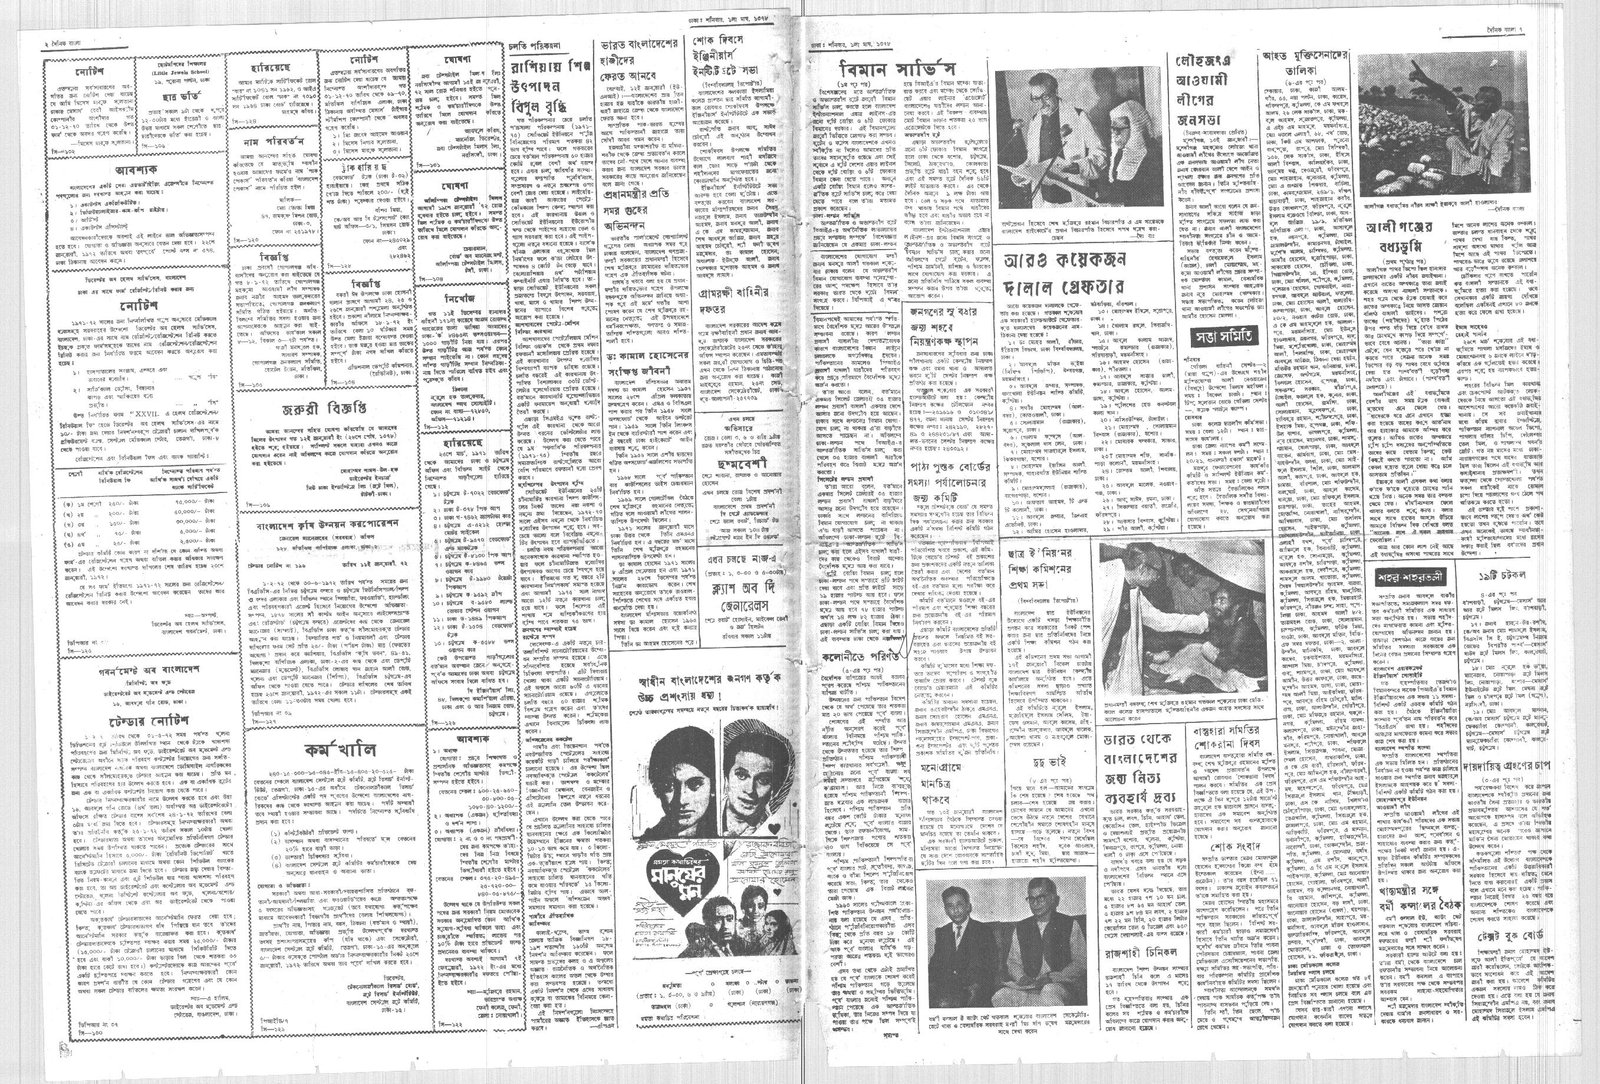 15JAN1972-DAINIK BANGLA-Regular-Page 2 and 7